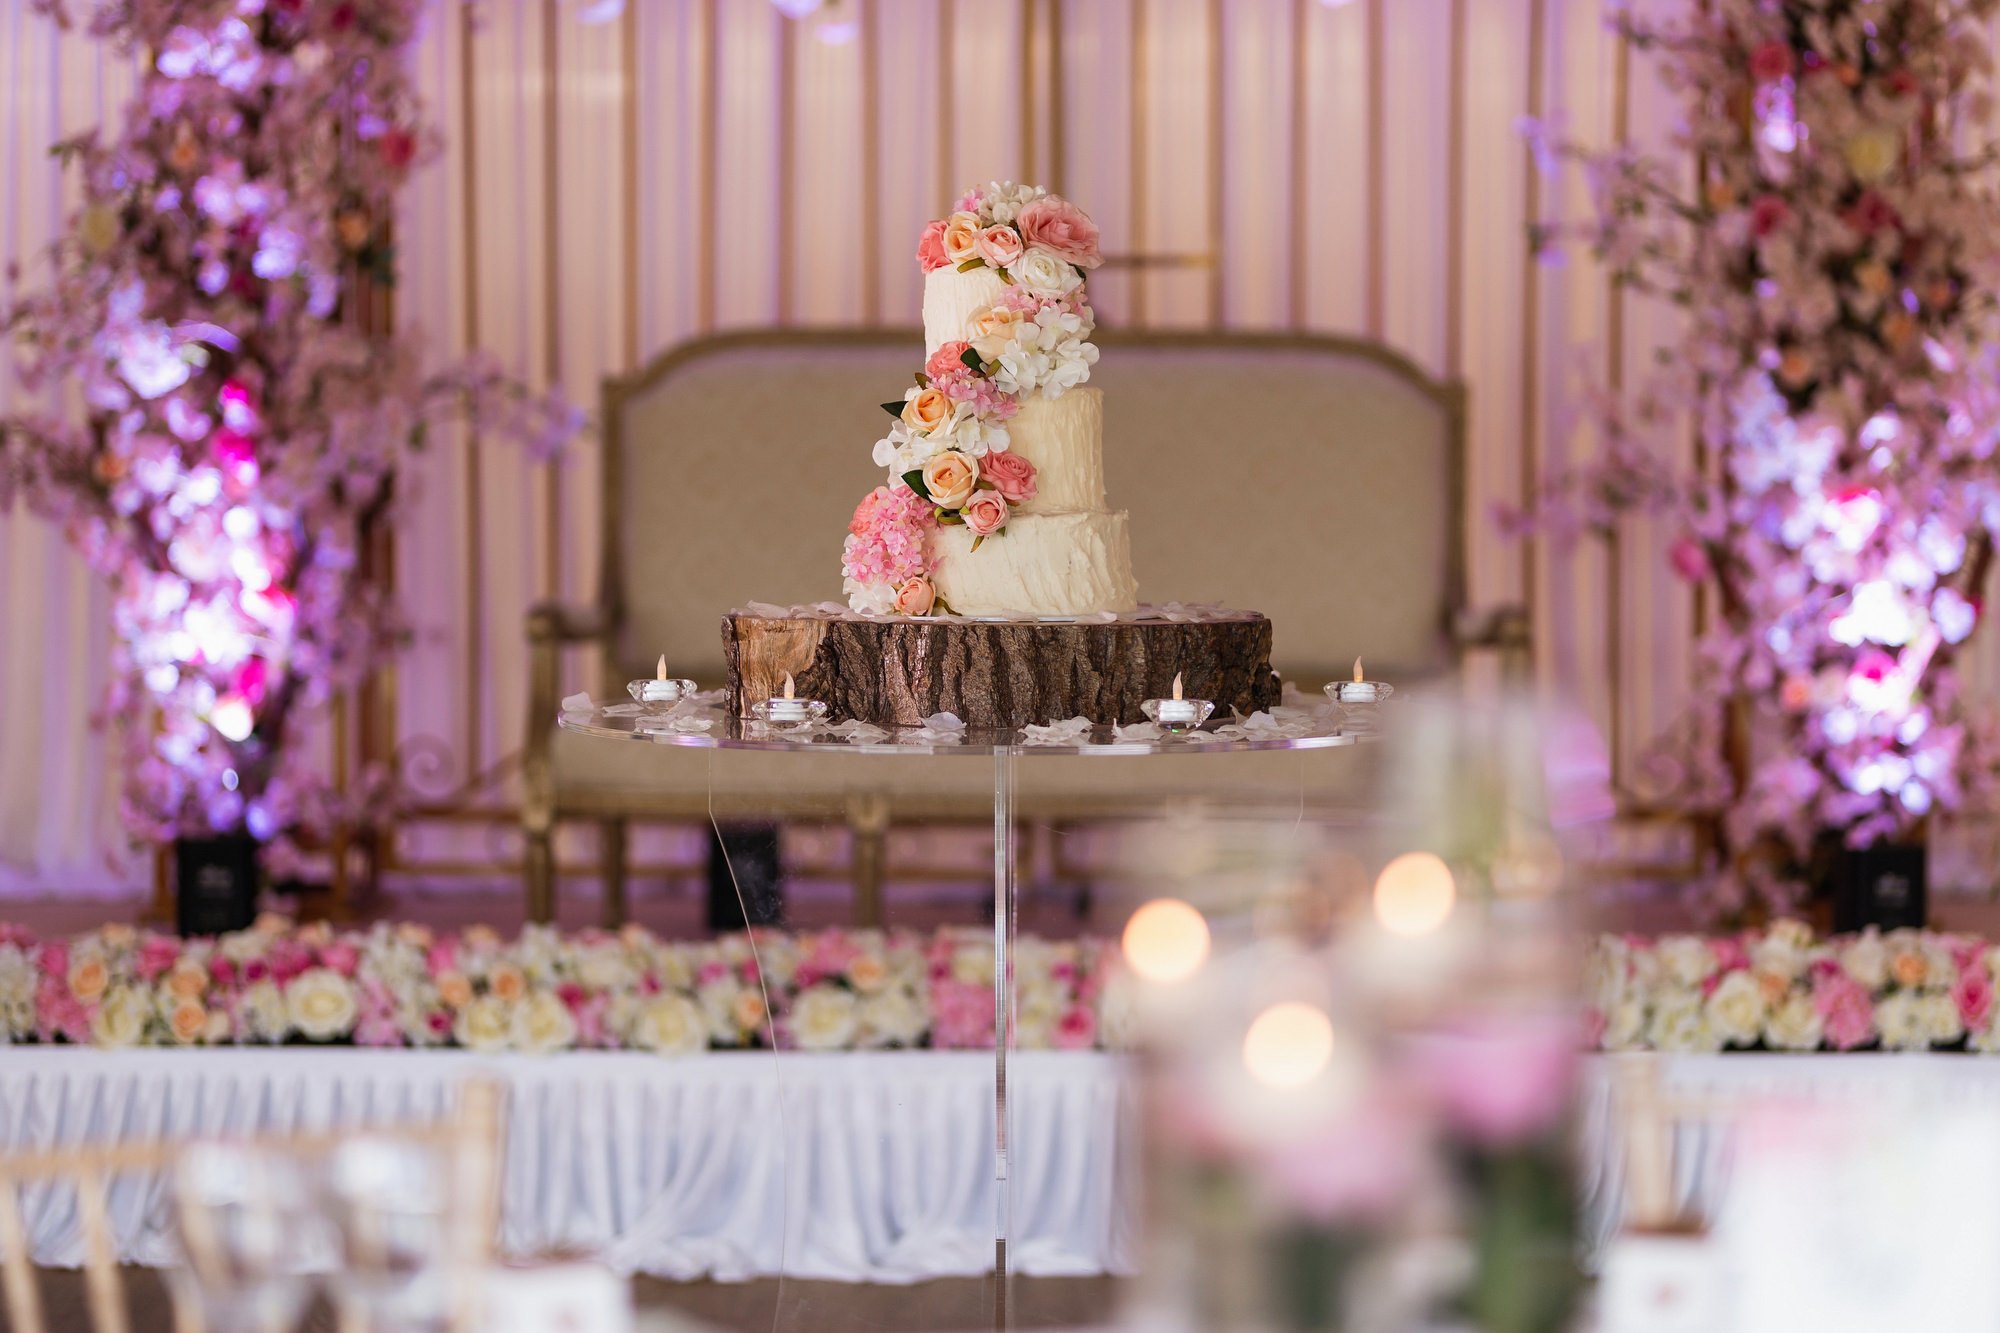 Fennes wedding venue, Asian wedding, Essex, wedding cake